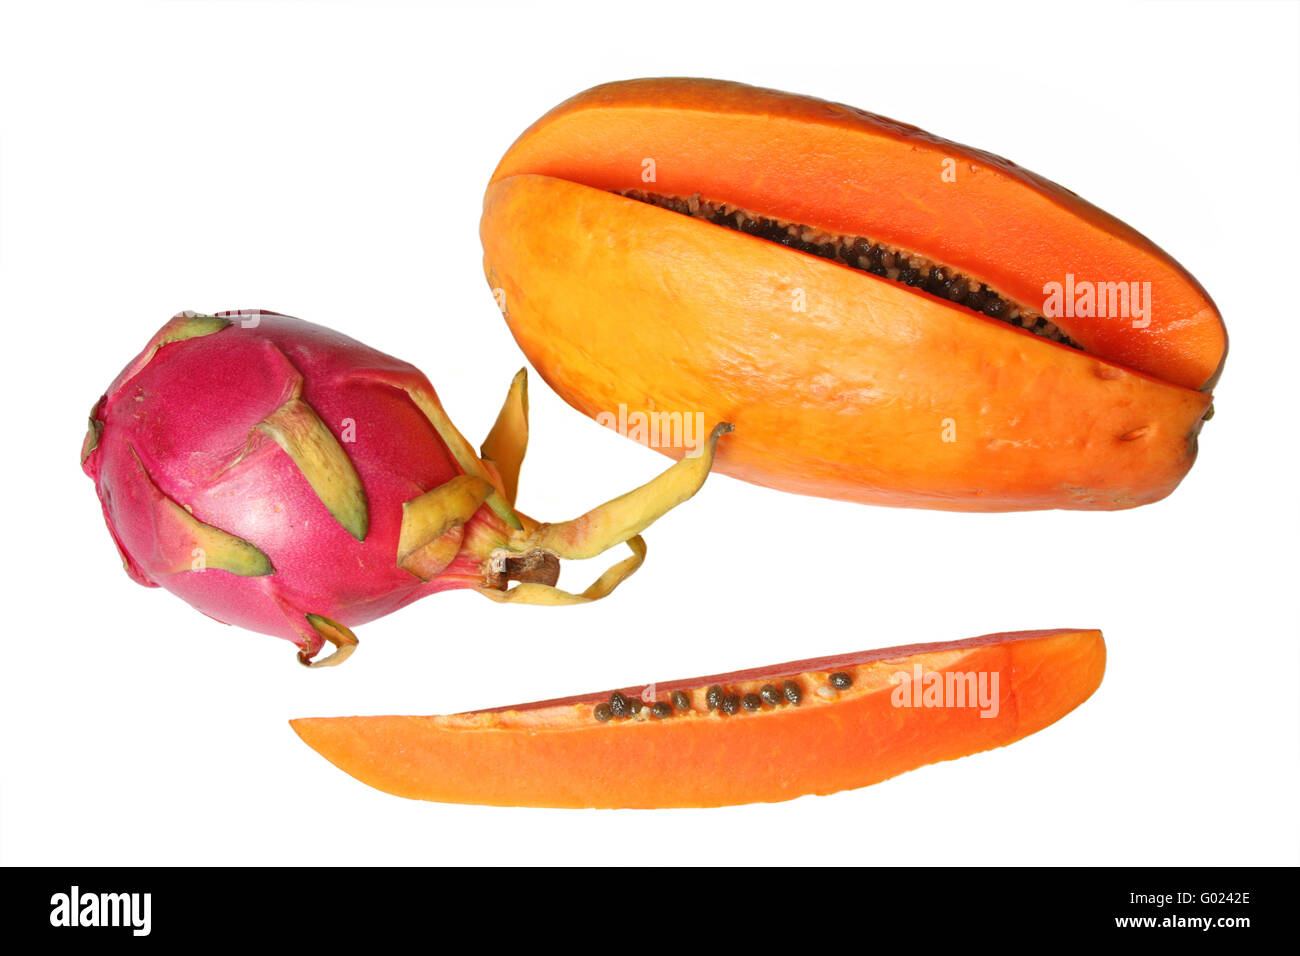 Tropical fruits - dragon fruit (Red Pitaya or Hylocereus undatus) and papaya. Isolated on white Stock Photo